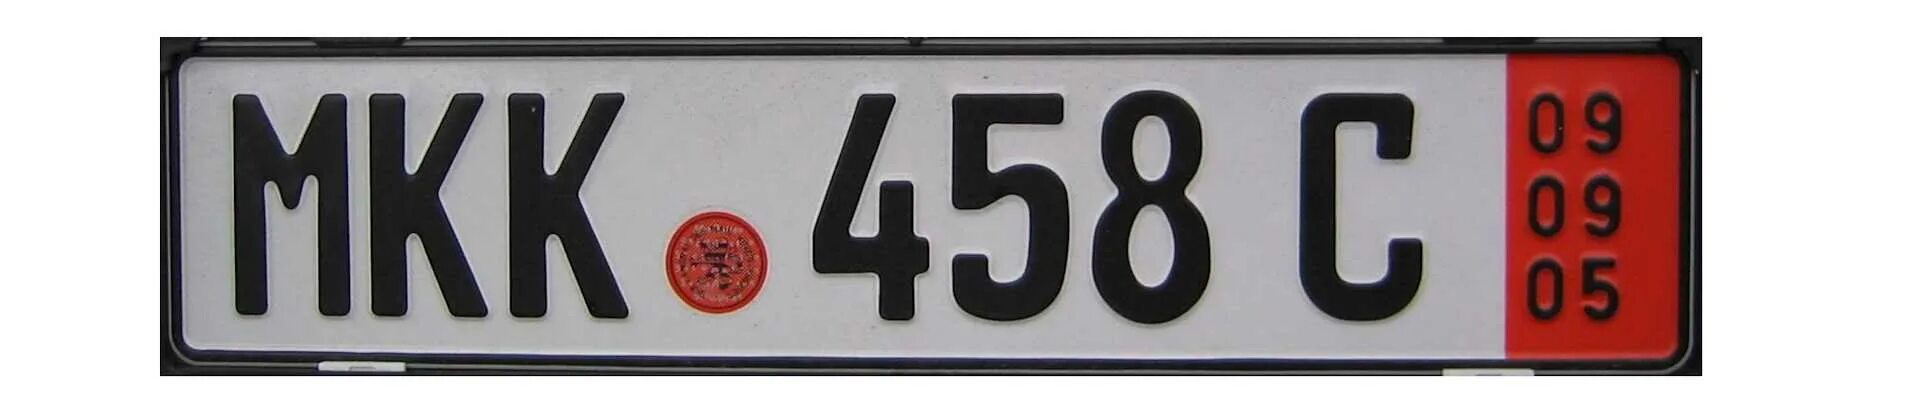 Транзитные гос номера Германии. Транзитные номерные знаки Германии. Немецкие номера машин транзитные. Транзитные номера Герм.